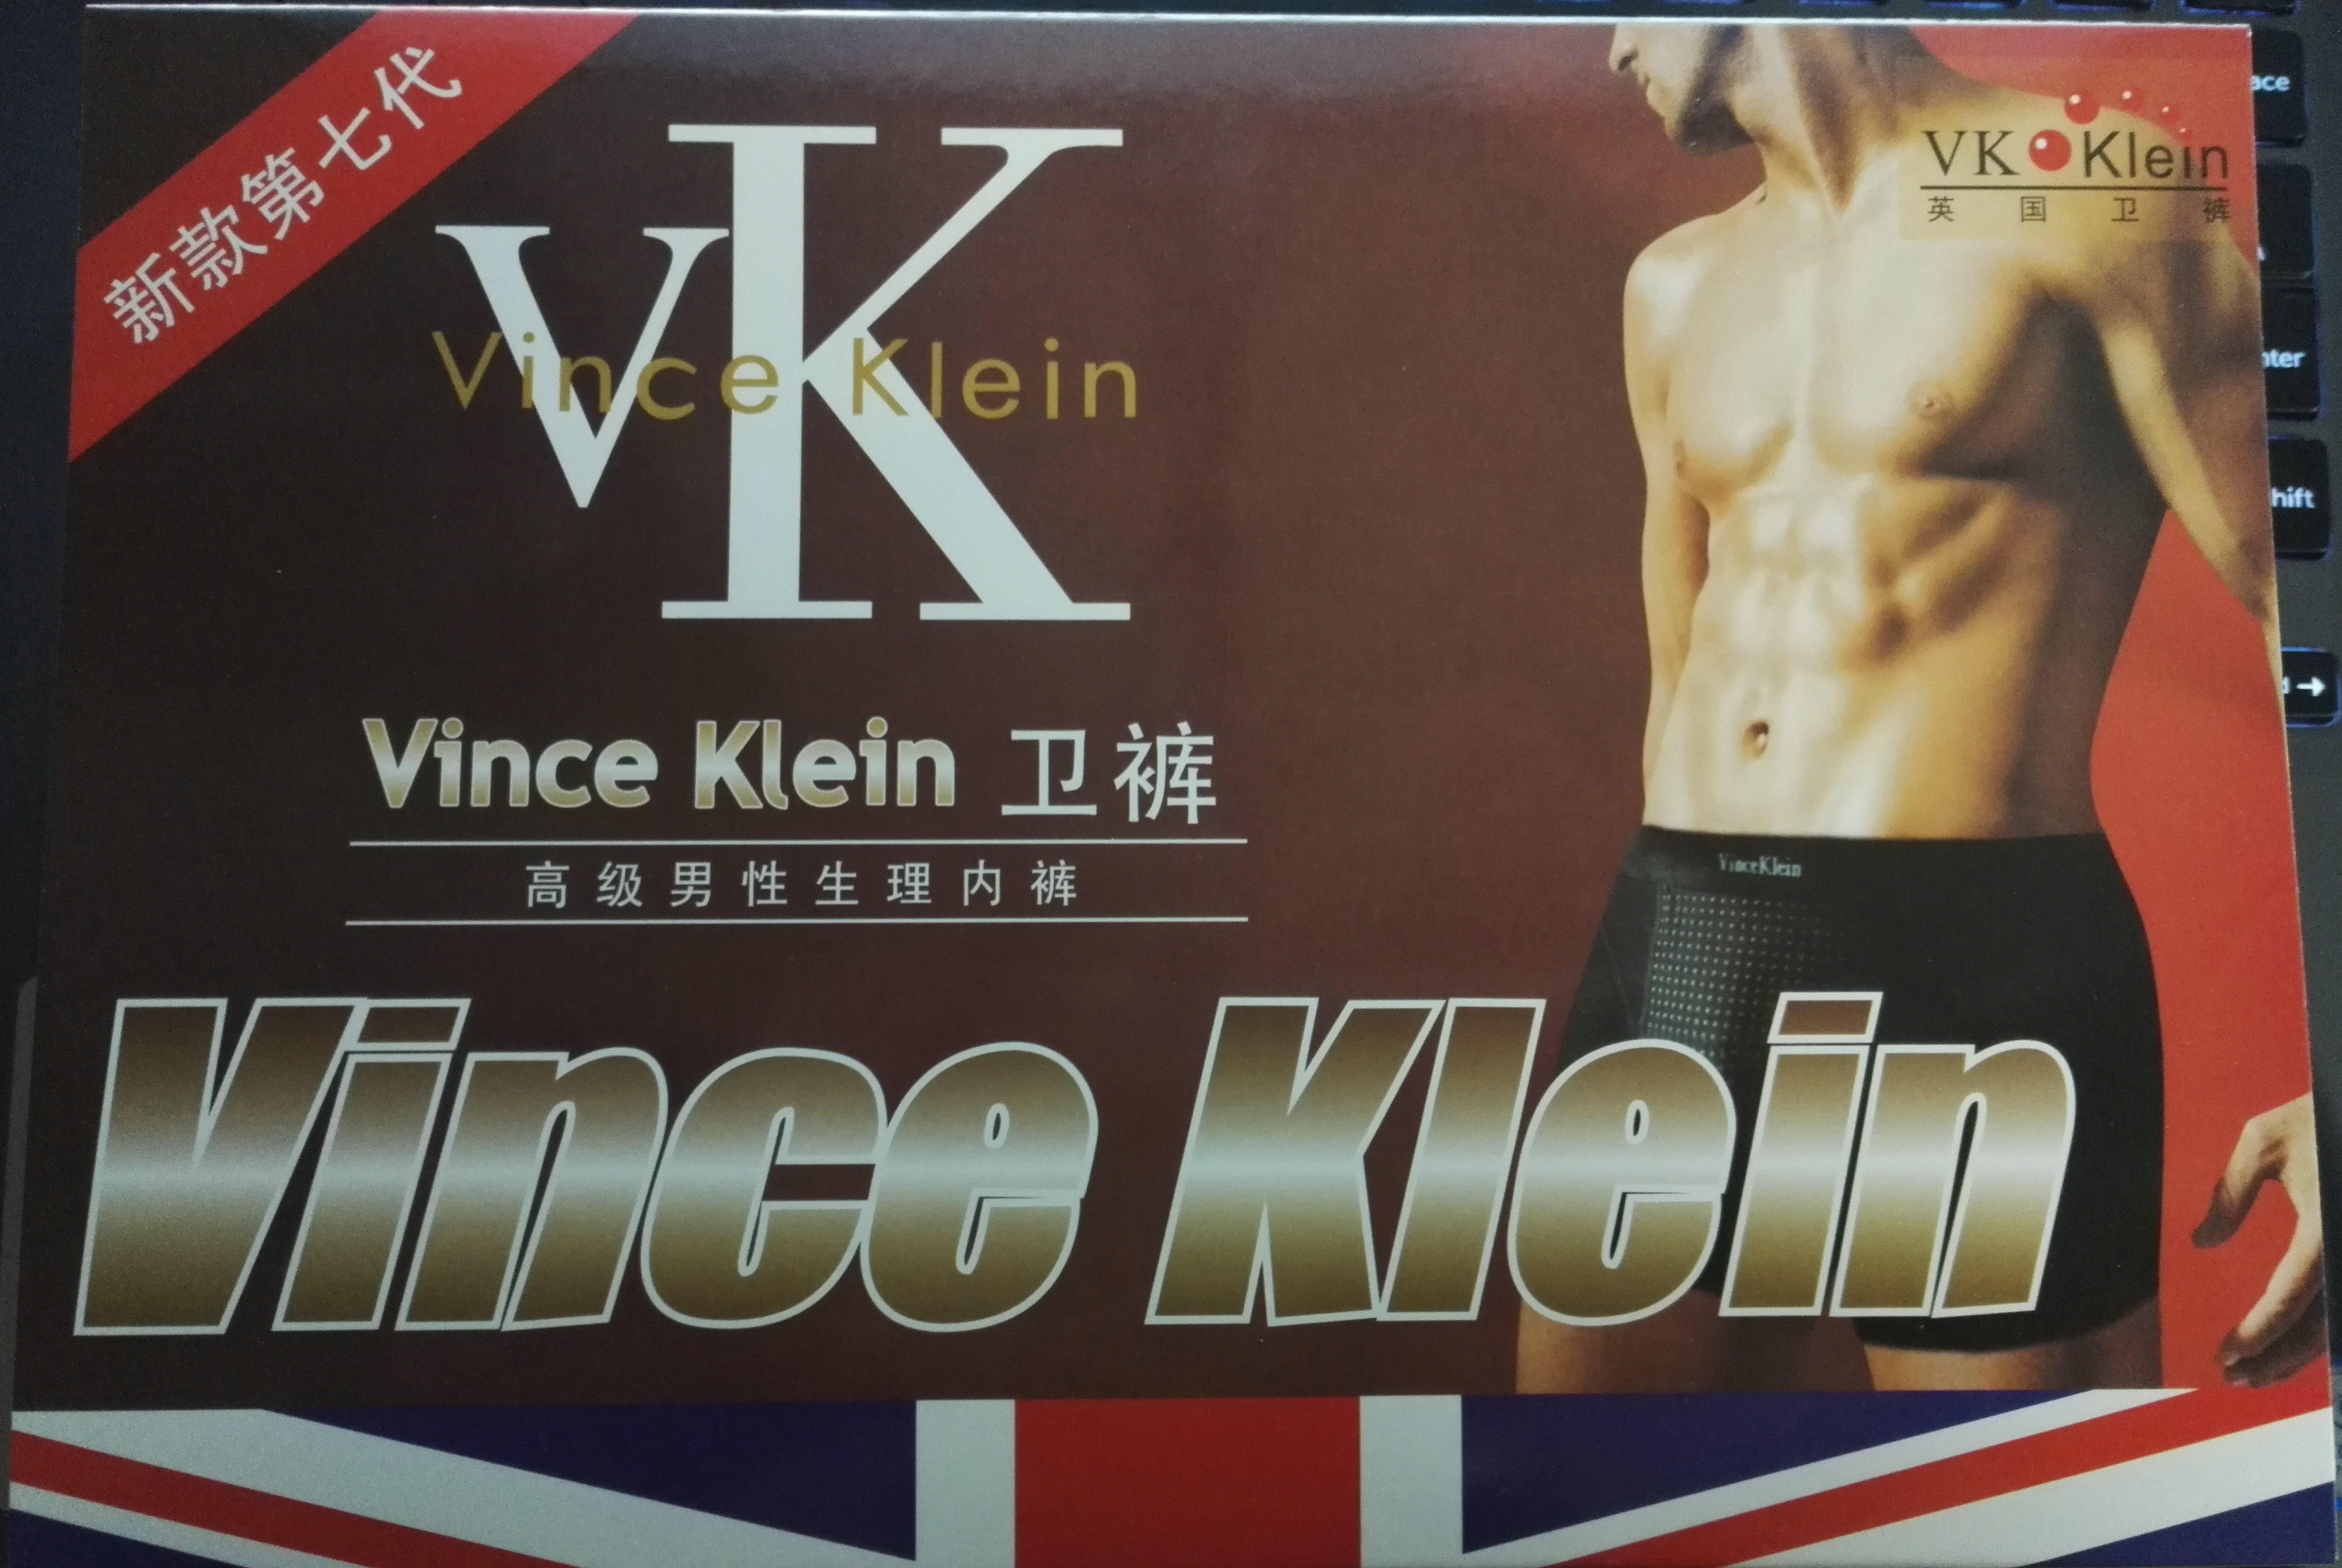 第七代正品英国卫裤VK磁疗男性生理保健内裤批发零销支一件代发